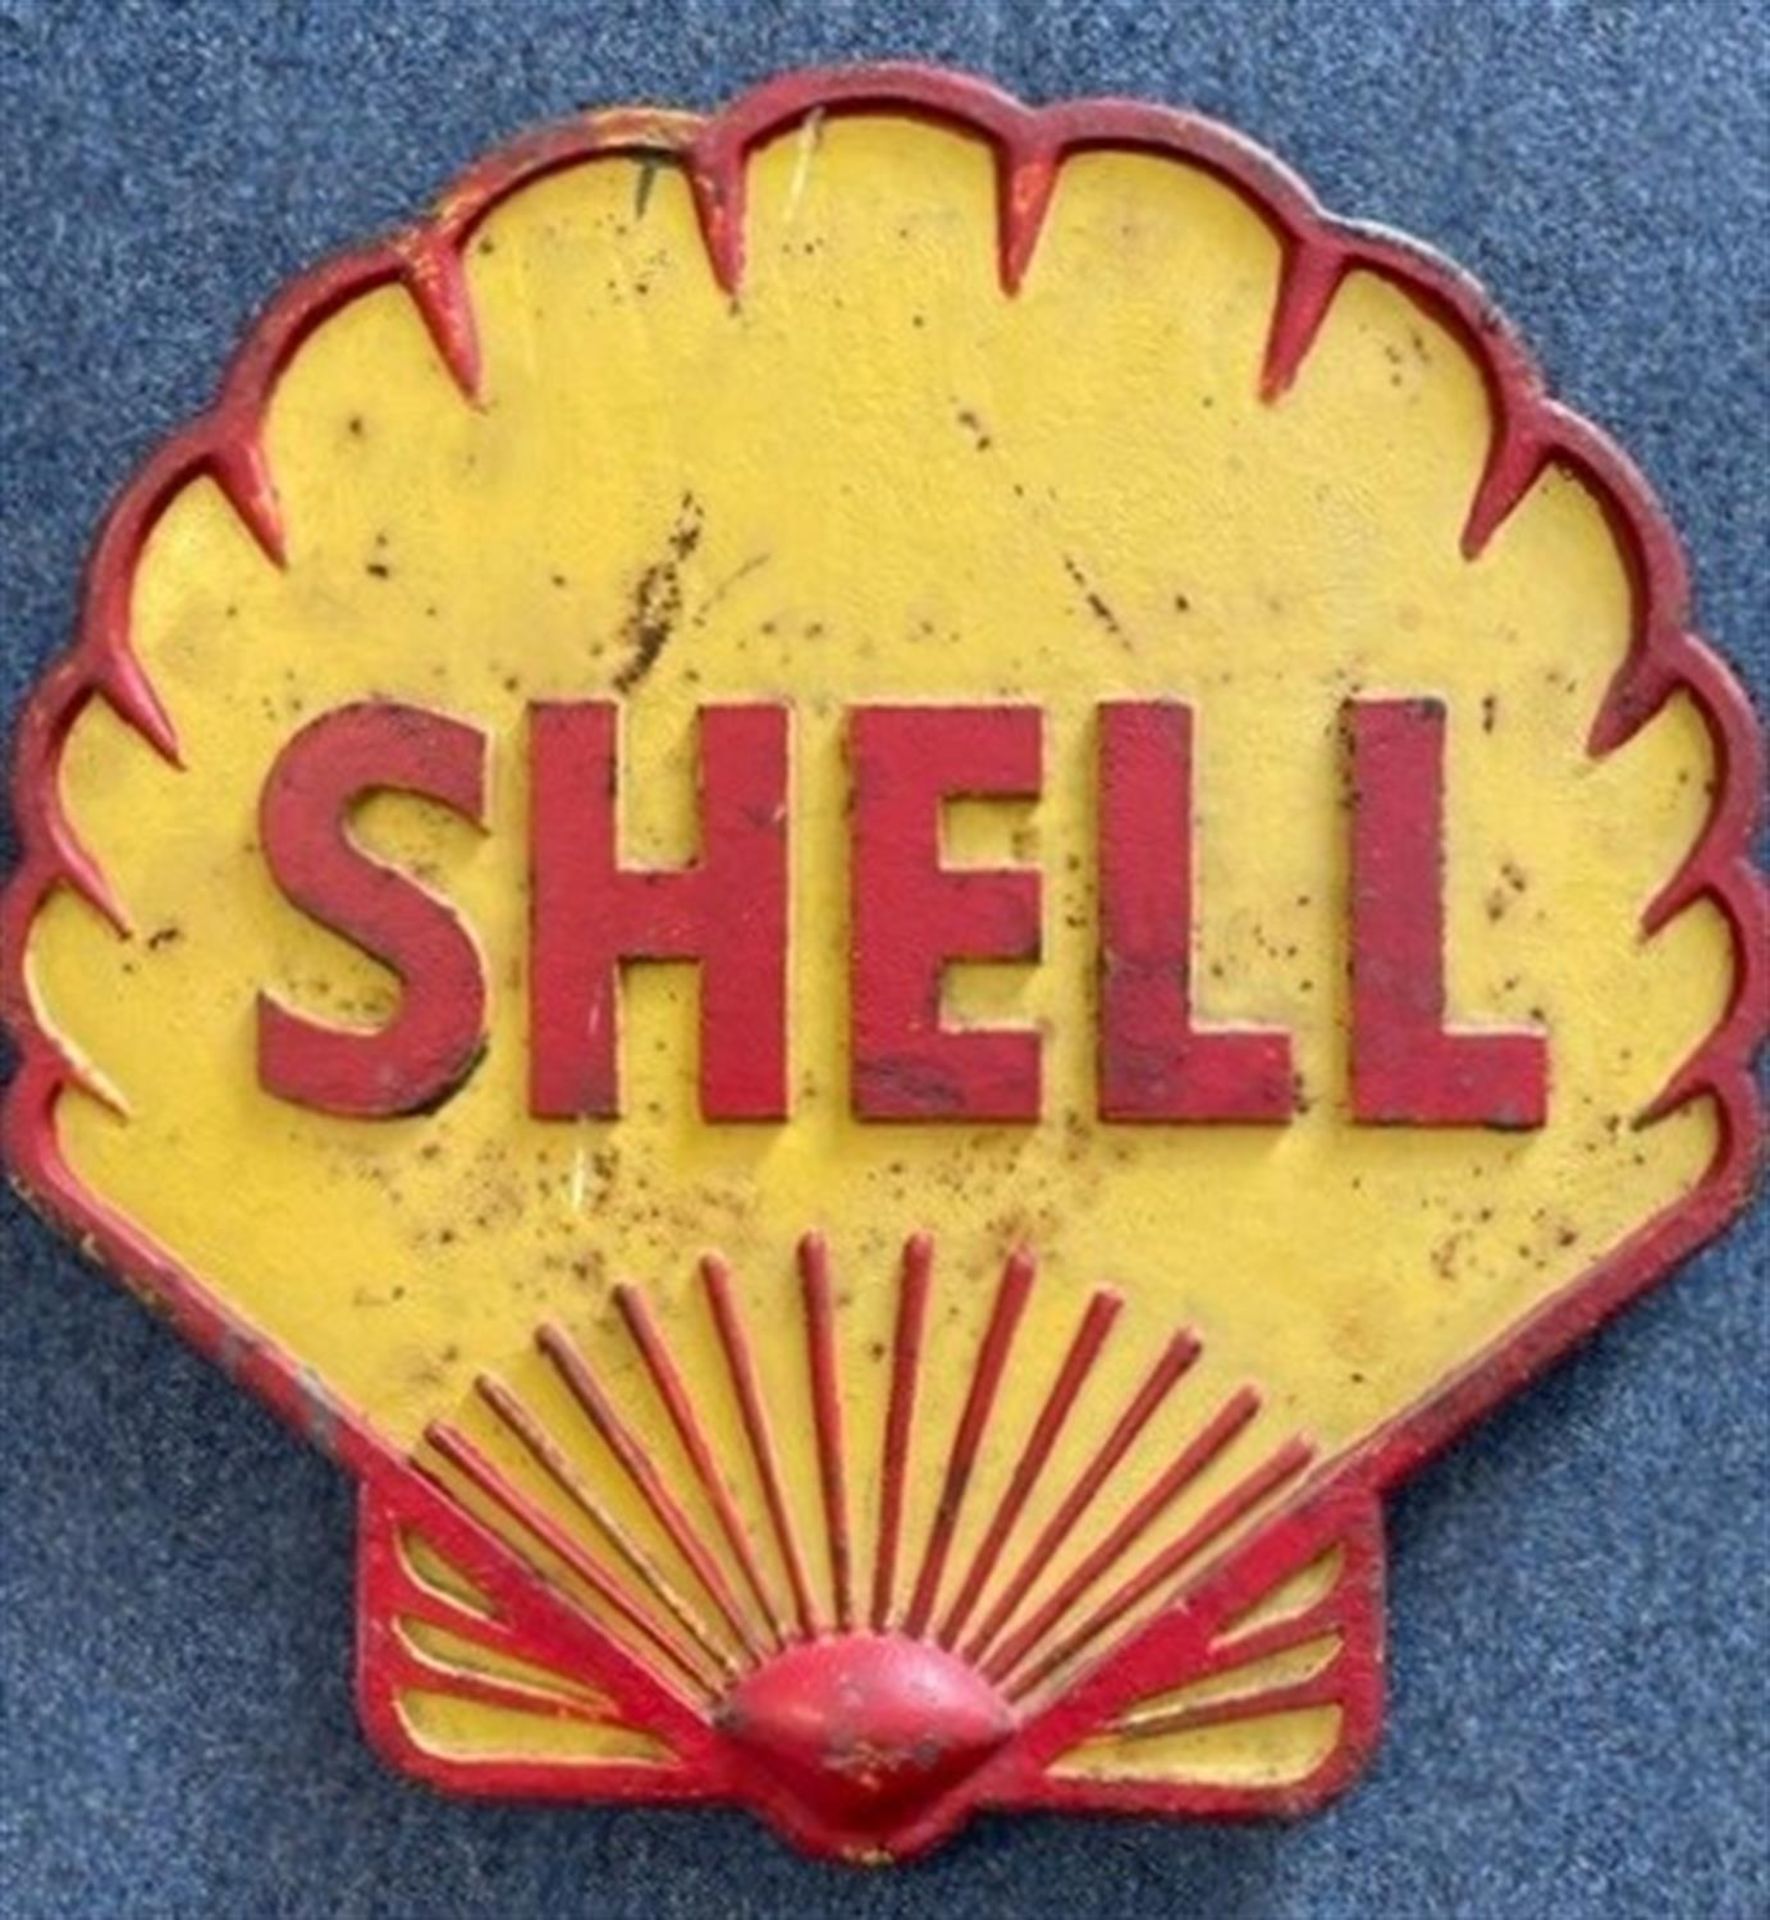 Rare, Original, Substantial Cast Metal Shell Sign c1930s - Image 7 of 7